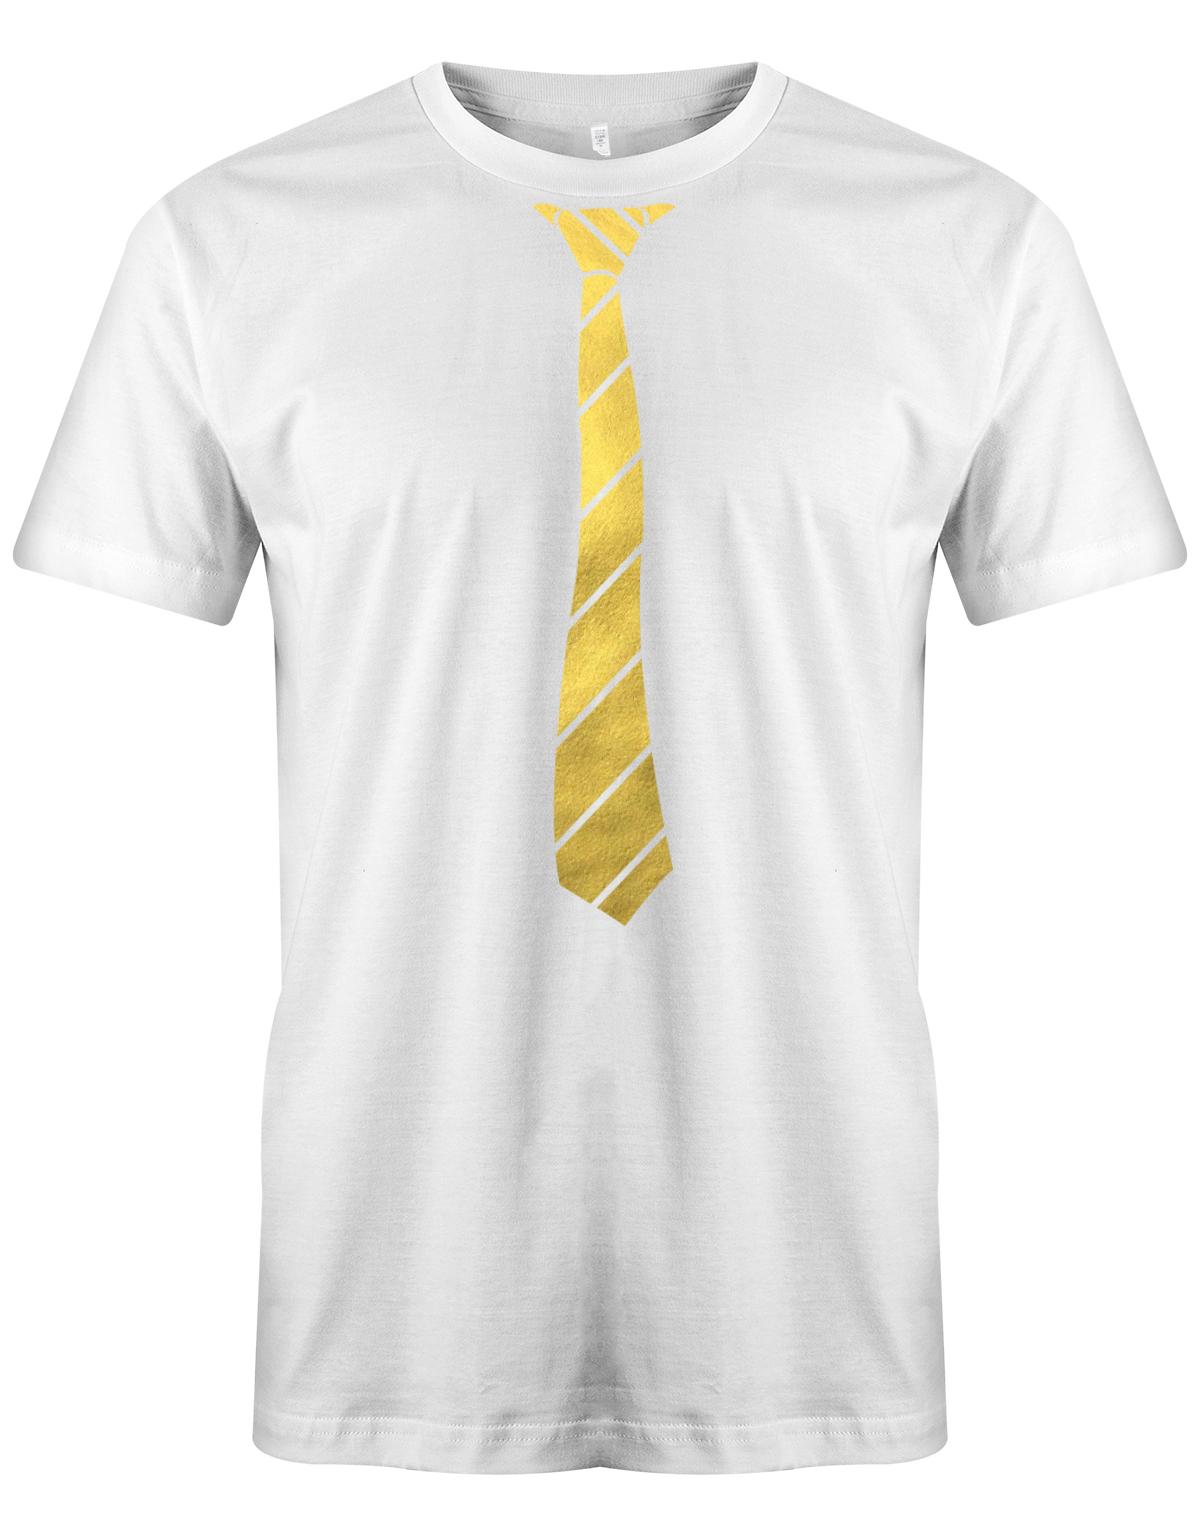 Krawatte-buisness-Herren-Shirt-JGA-Weiss-Gold